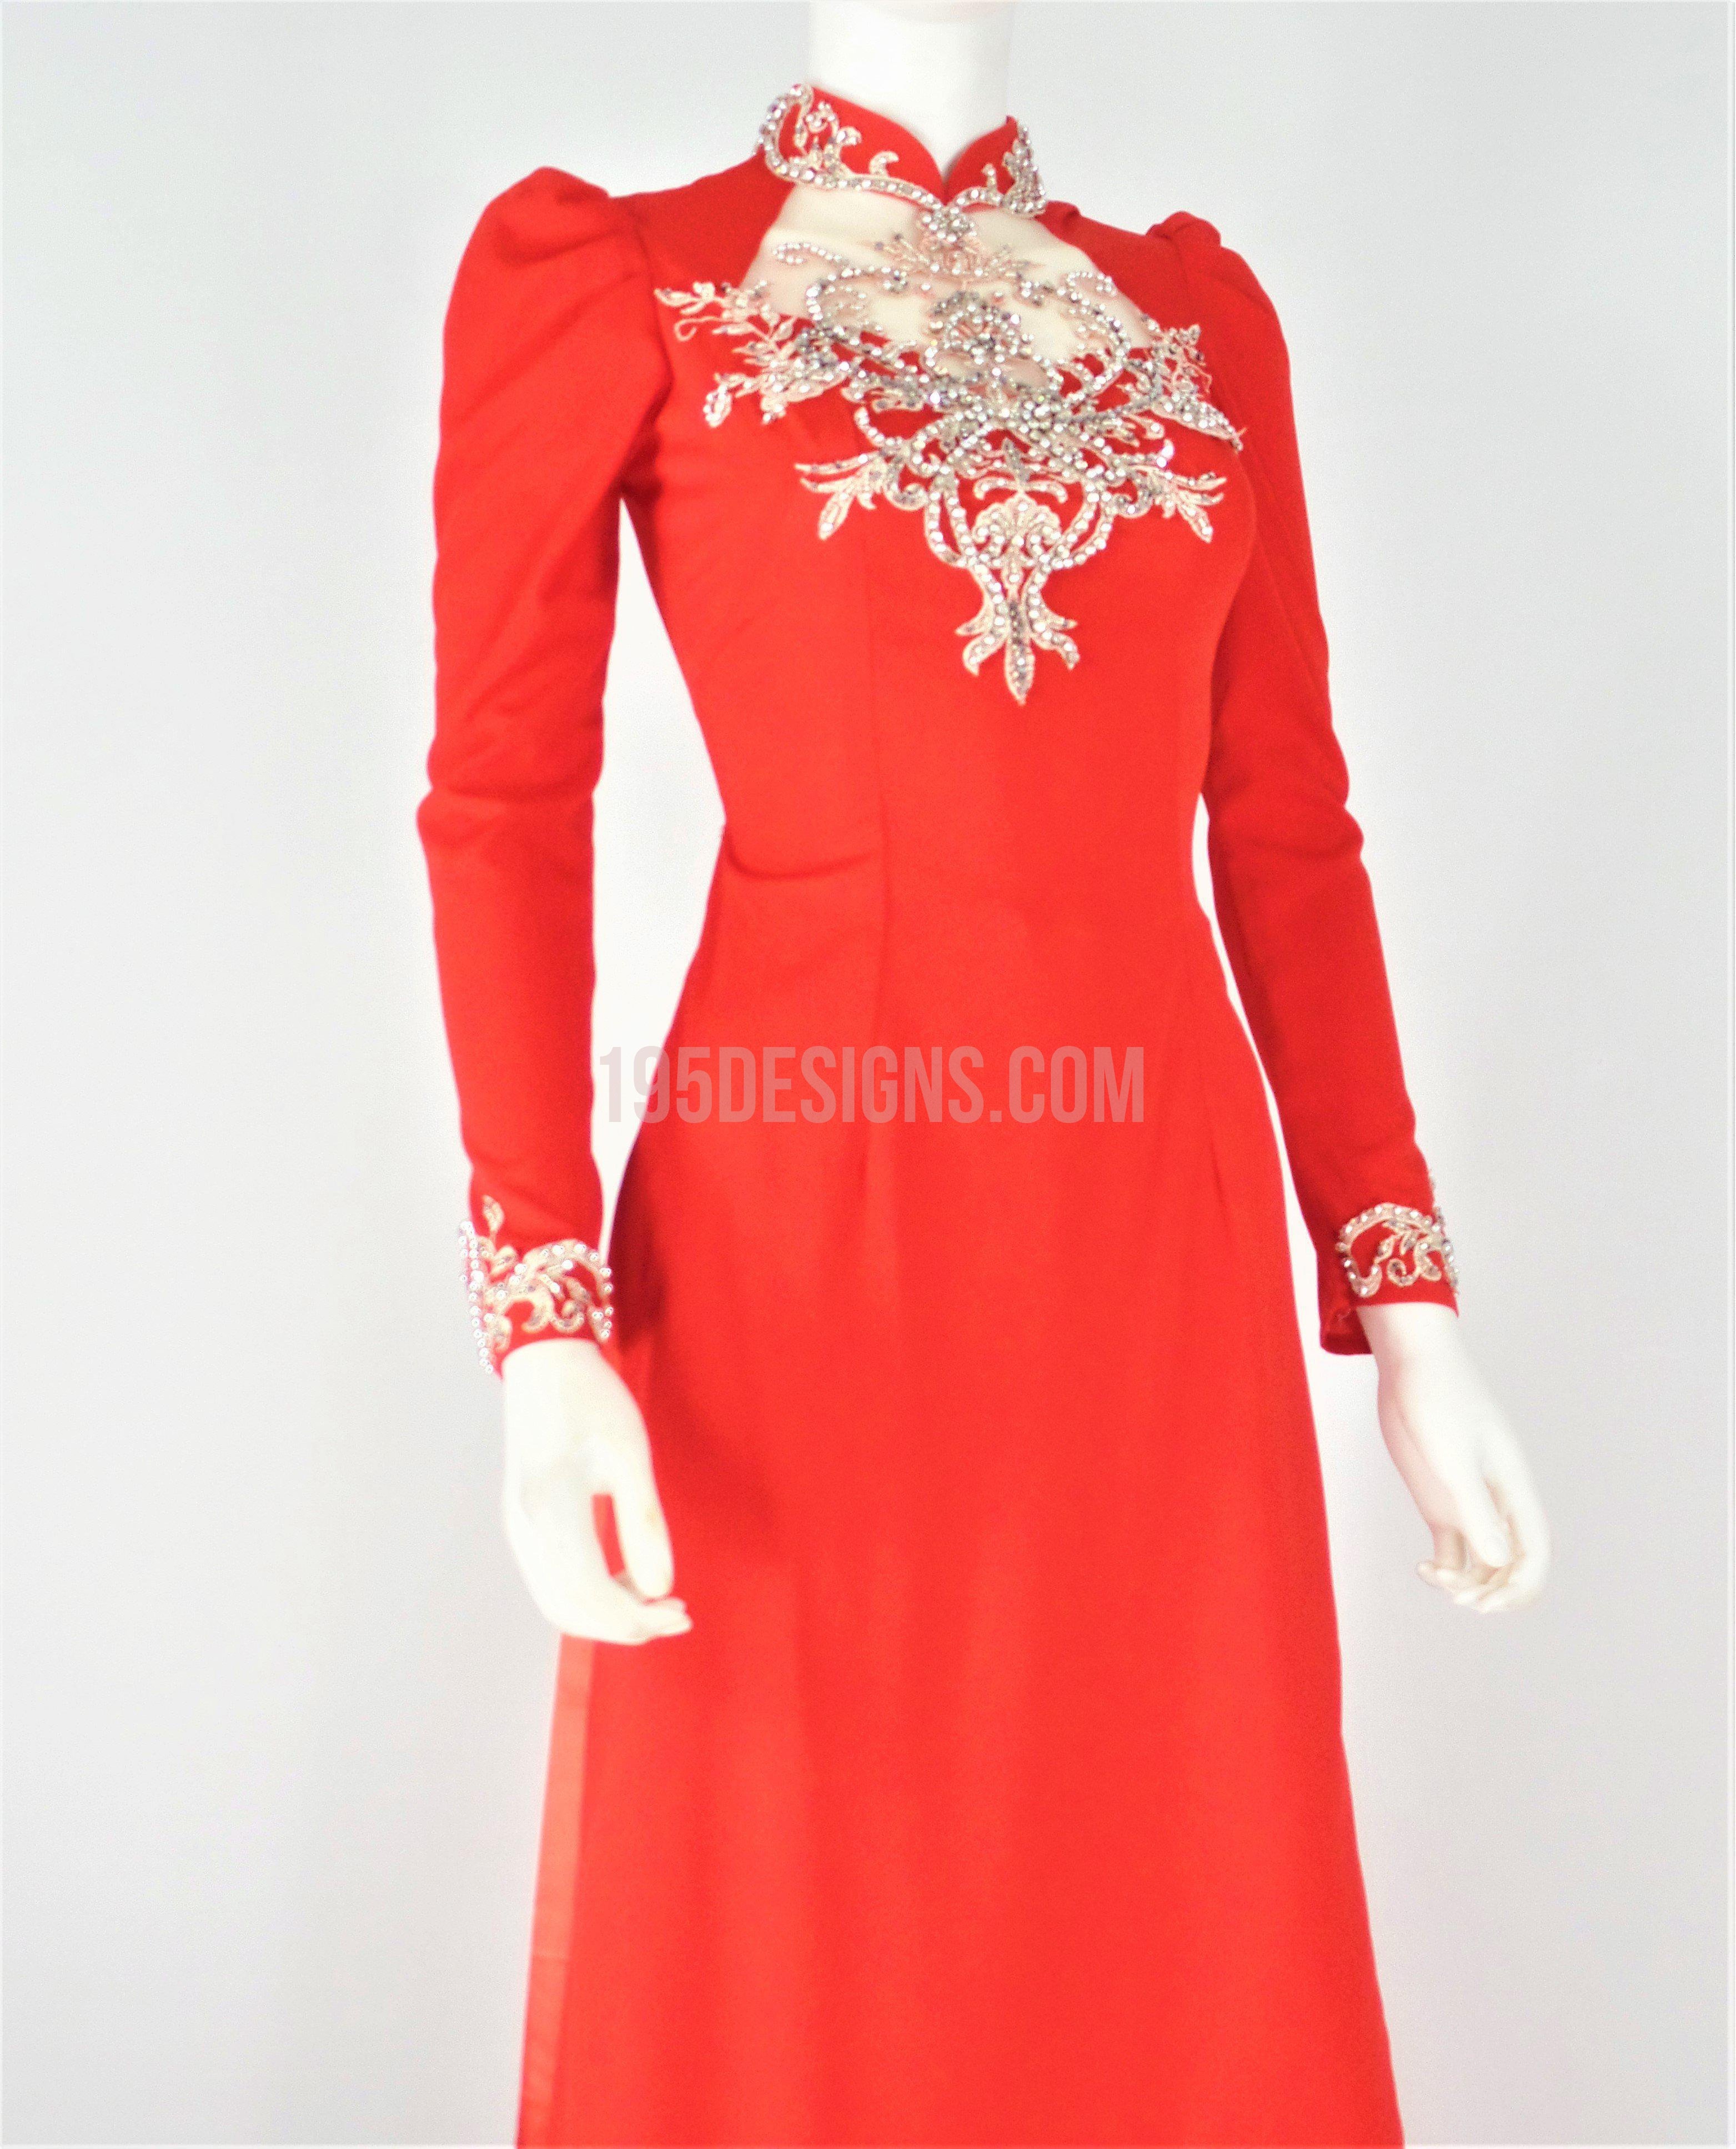 Red Ao Dai Vietnamese Long Dress / Áo Dài Lụa Đỏ Tay Phồng